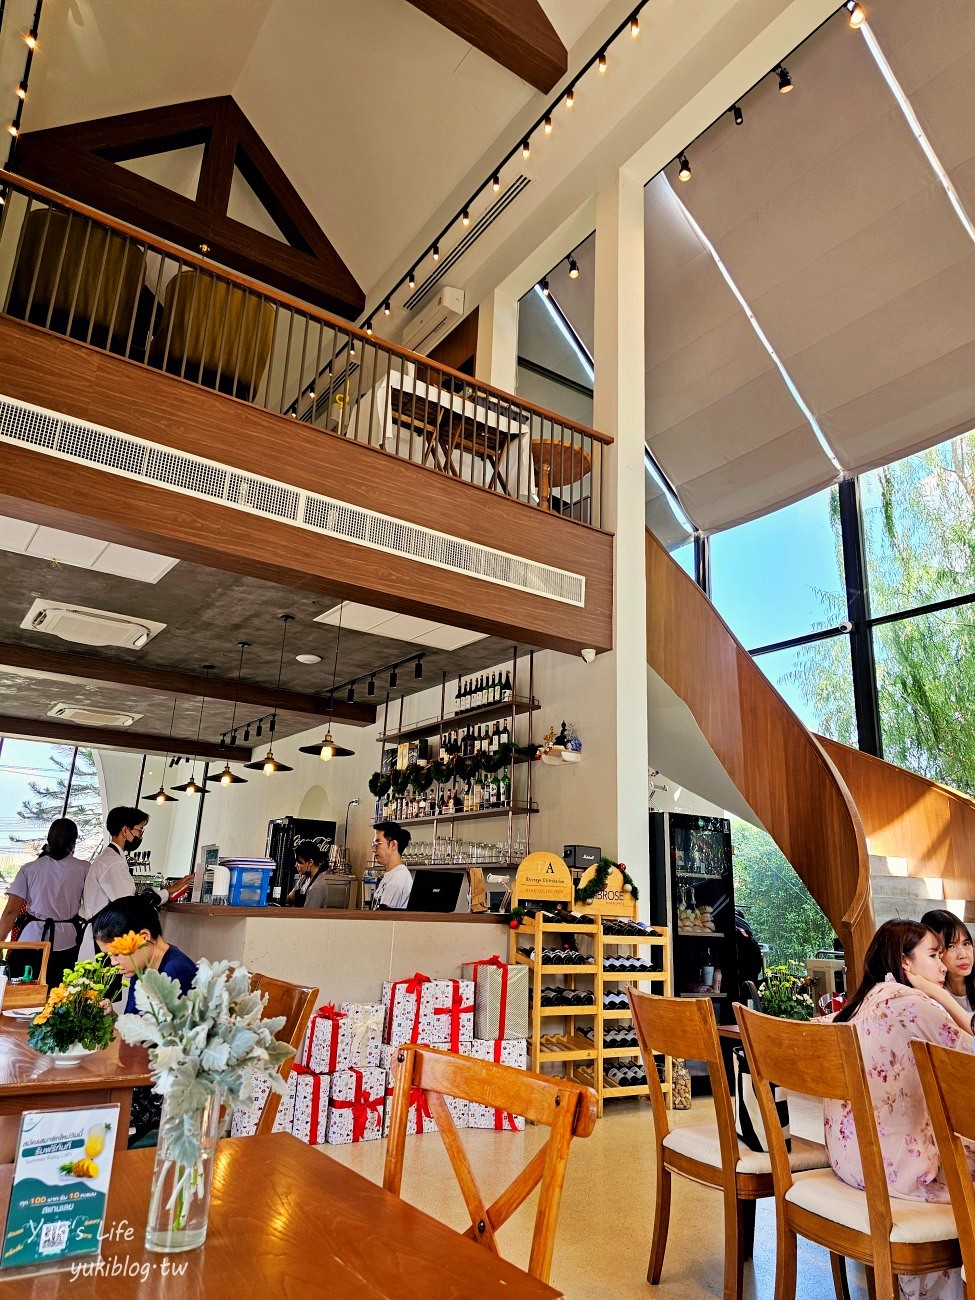 曼谷網美咖啡廳|Take a Breath café & eatery|森林系戶外婚禮風，浪漫指數破表~食物令人驚豔 - yukiblog.tw